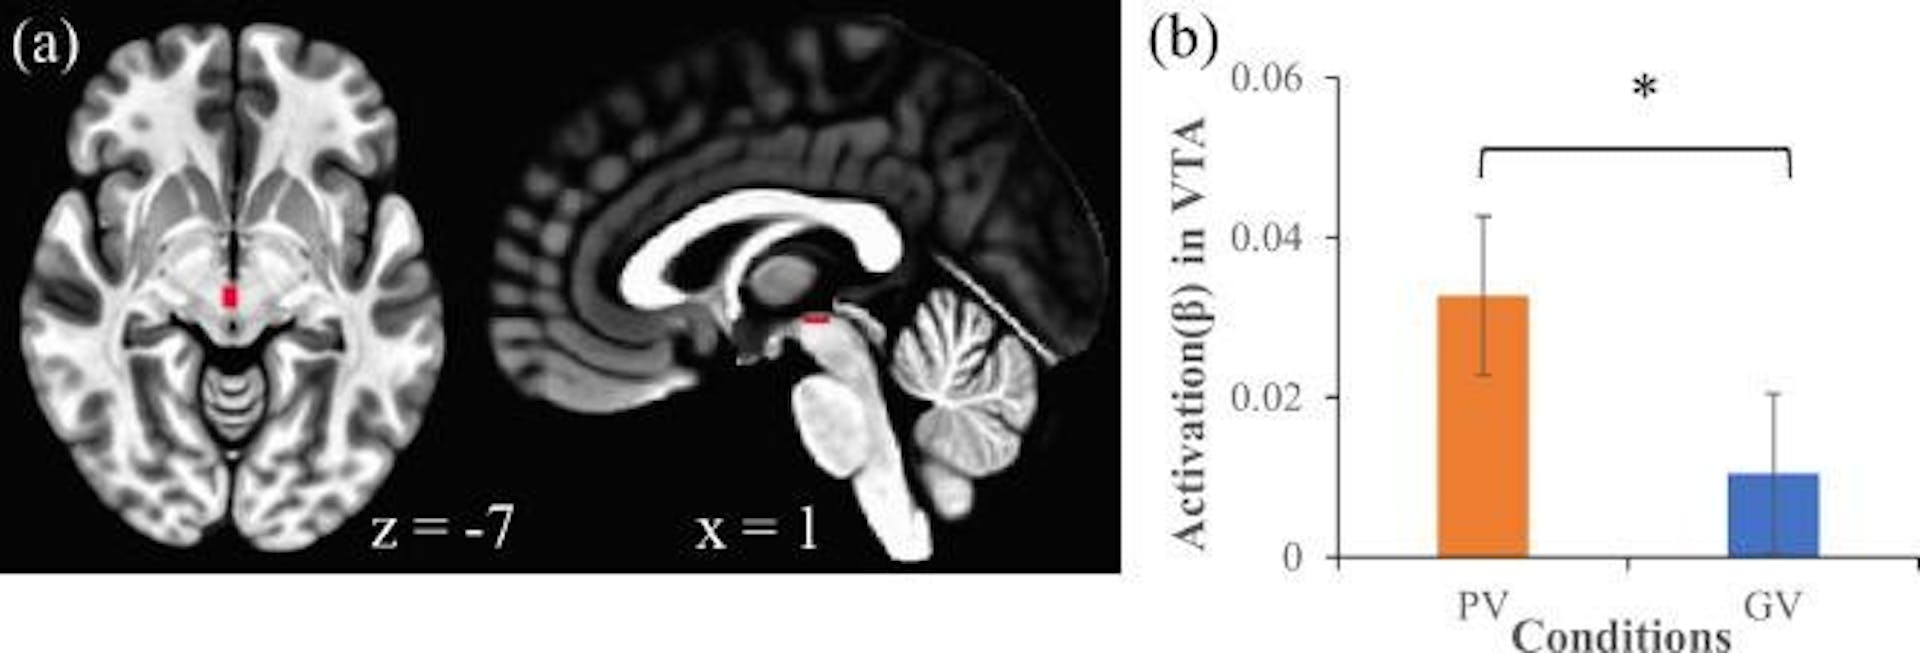 该图像分为两部分：(a) 大脑扫描显示与观看个性化内容相关的特定大脑区域的活动，(b) 条形图显示受试者观看个性化内容时腹侧被盖区 (VTA) 的活动水平存在显着差异与广义视频相比，根据星号表示的键。这表明个性化内容可能会引起与奖励处理相关的更强烈的神经反应。